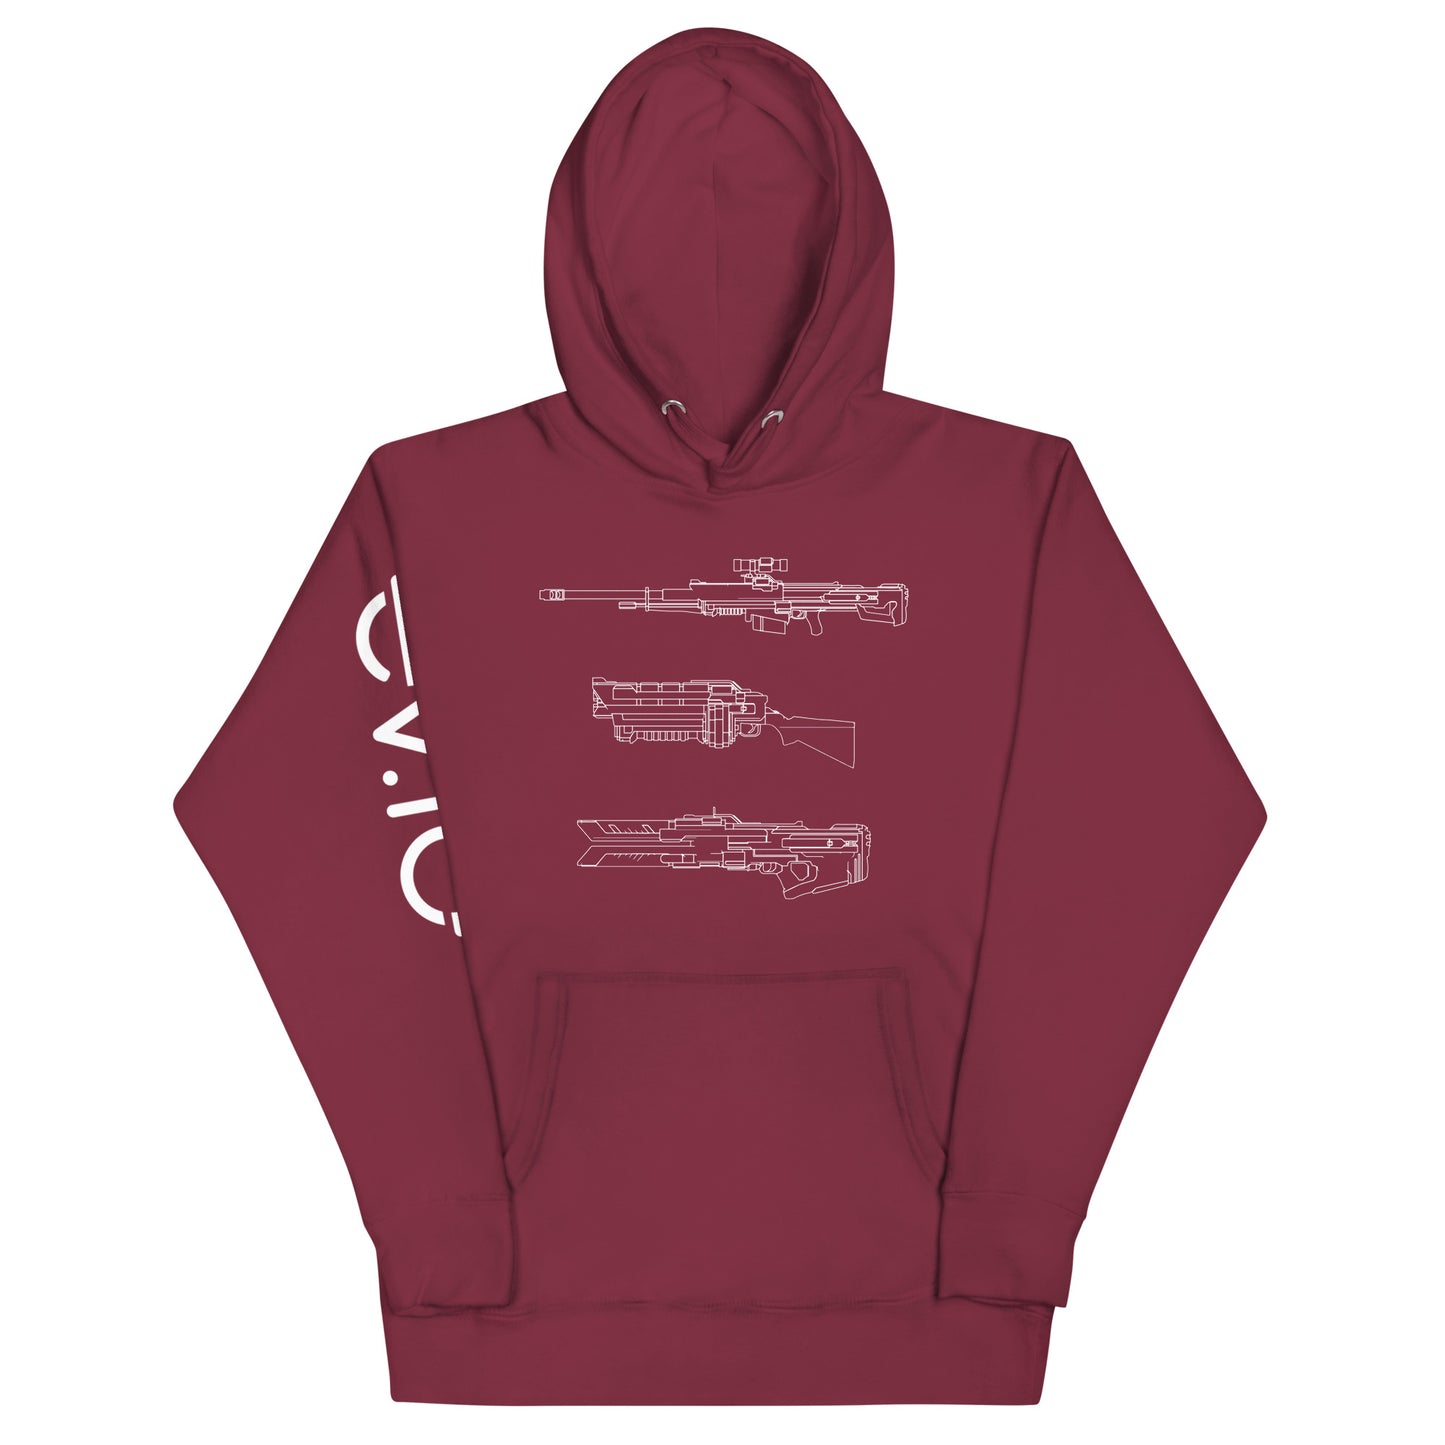 ev.io weapons unisex hoodie